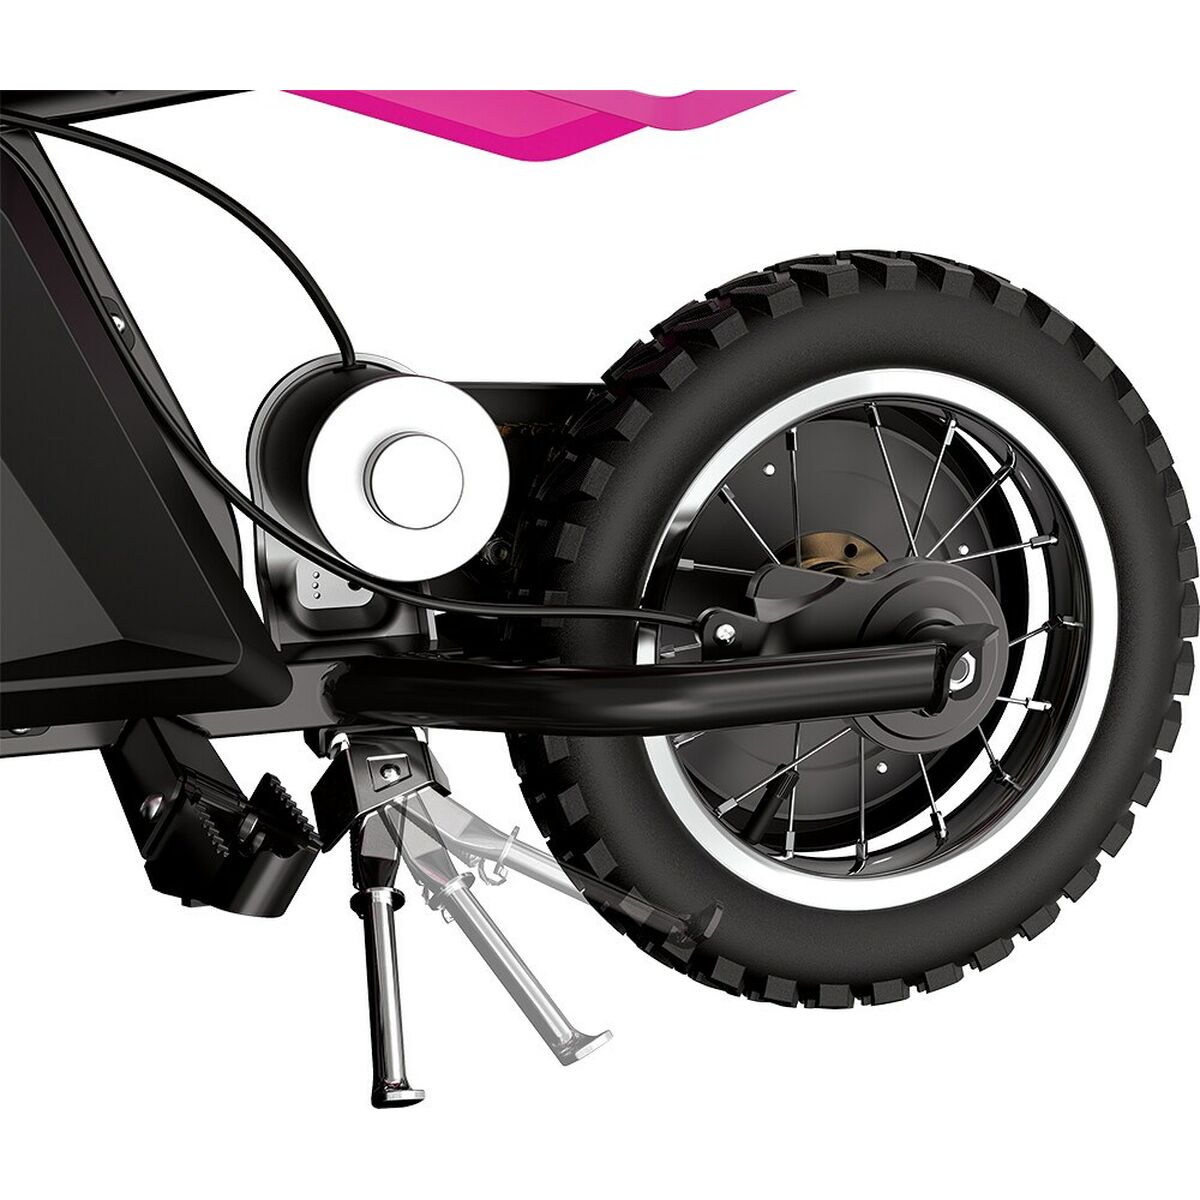 Elektrische scooter voor kinderen Razor Razor MX125 Dirt Zwart